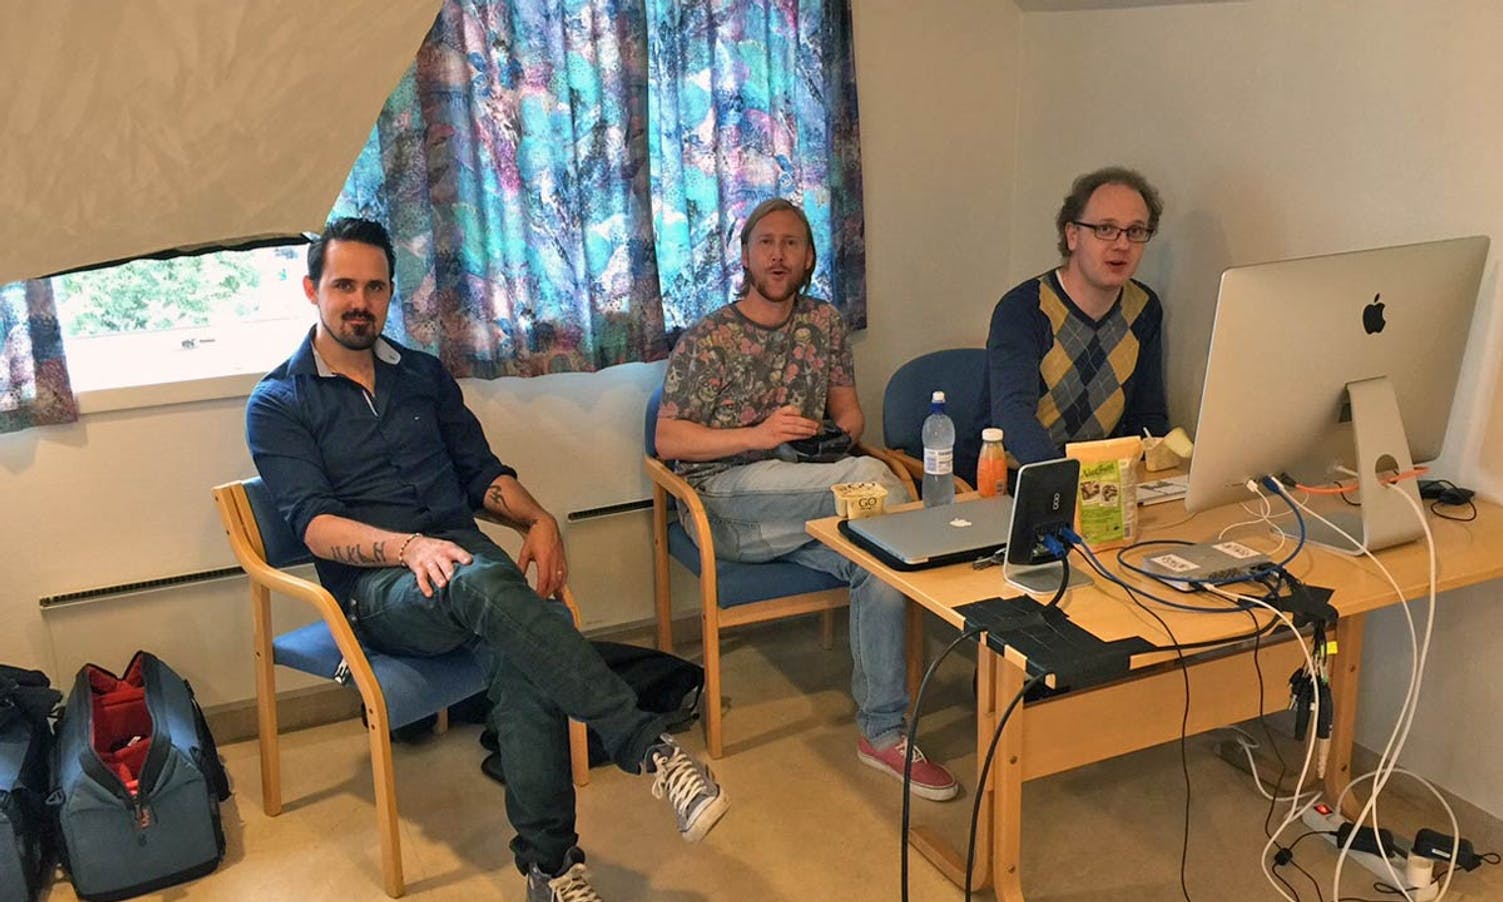 Anders Fløysand, Ørjan Håland og Gerhard Just Olsen under testing måndag. (Foto: KVB)